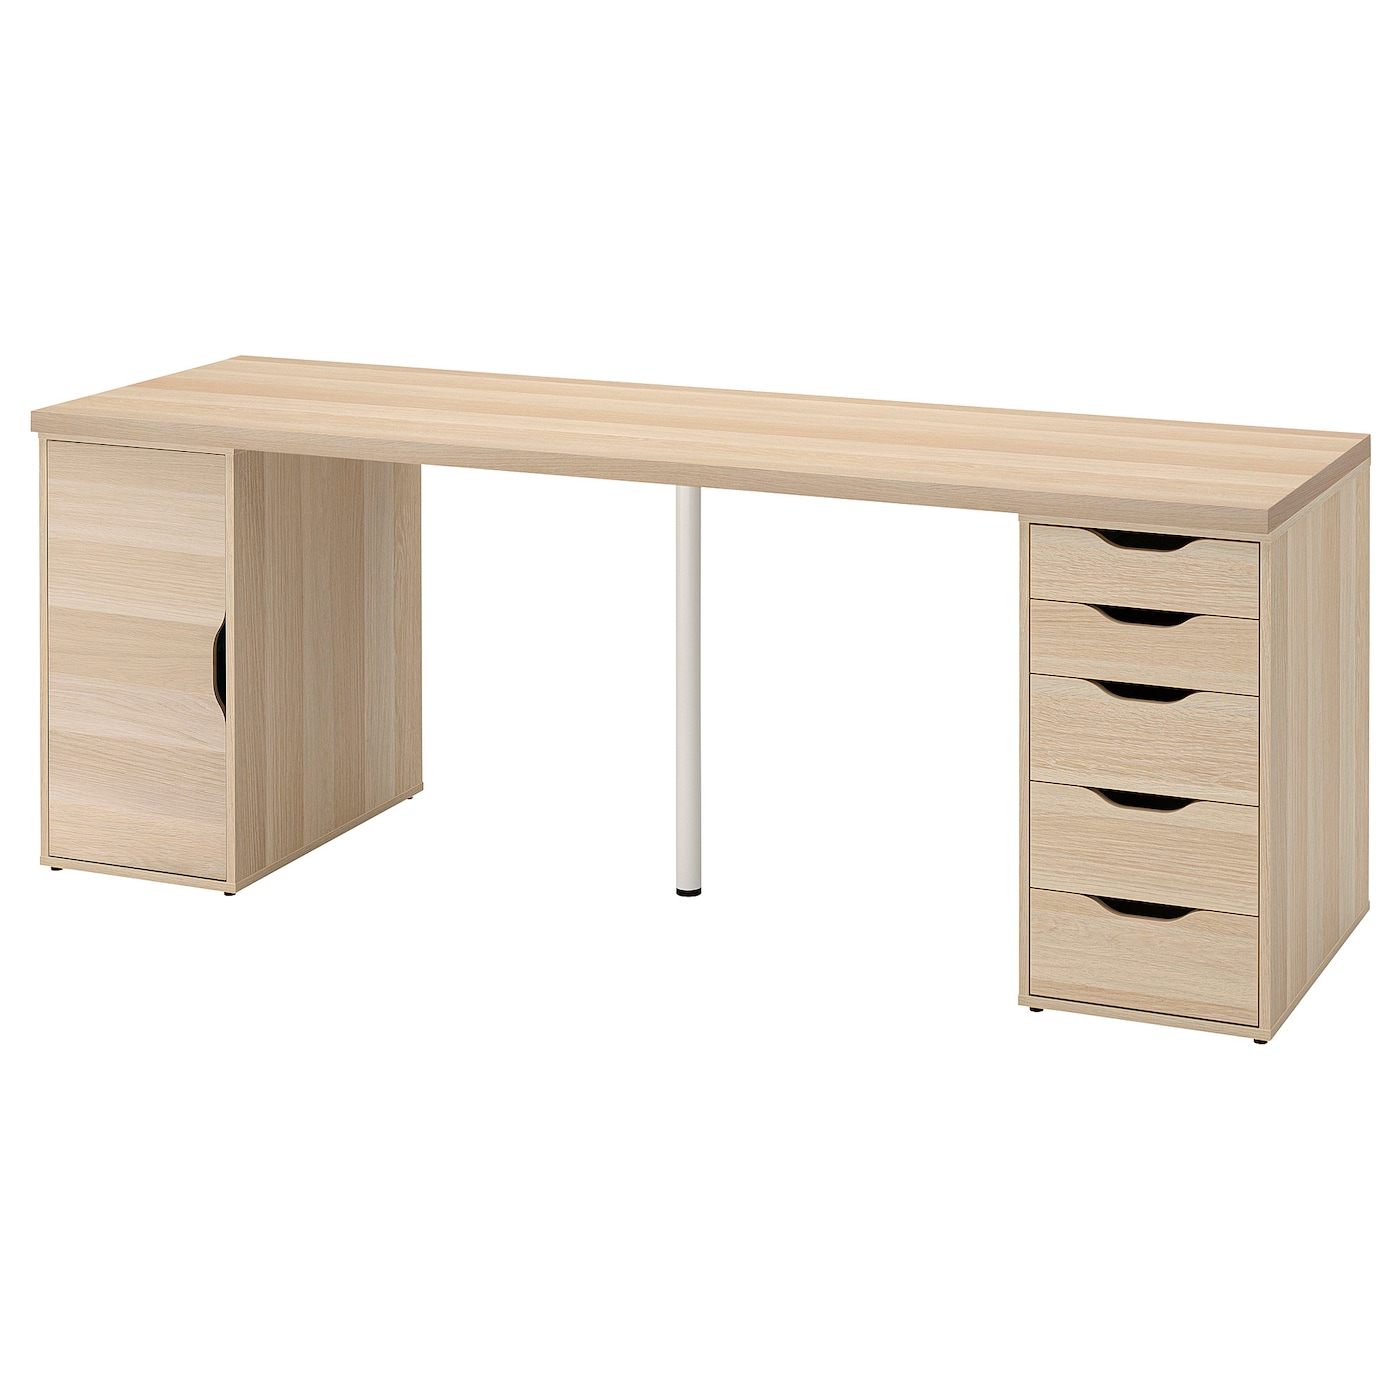 Письменный стол с ящиками - IKEA LAGKAPTEN/ALEX, 200х60 см, под беленый дуб, ЛАГКАПТЕН/АЛЕКС ИКЕА